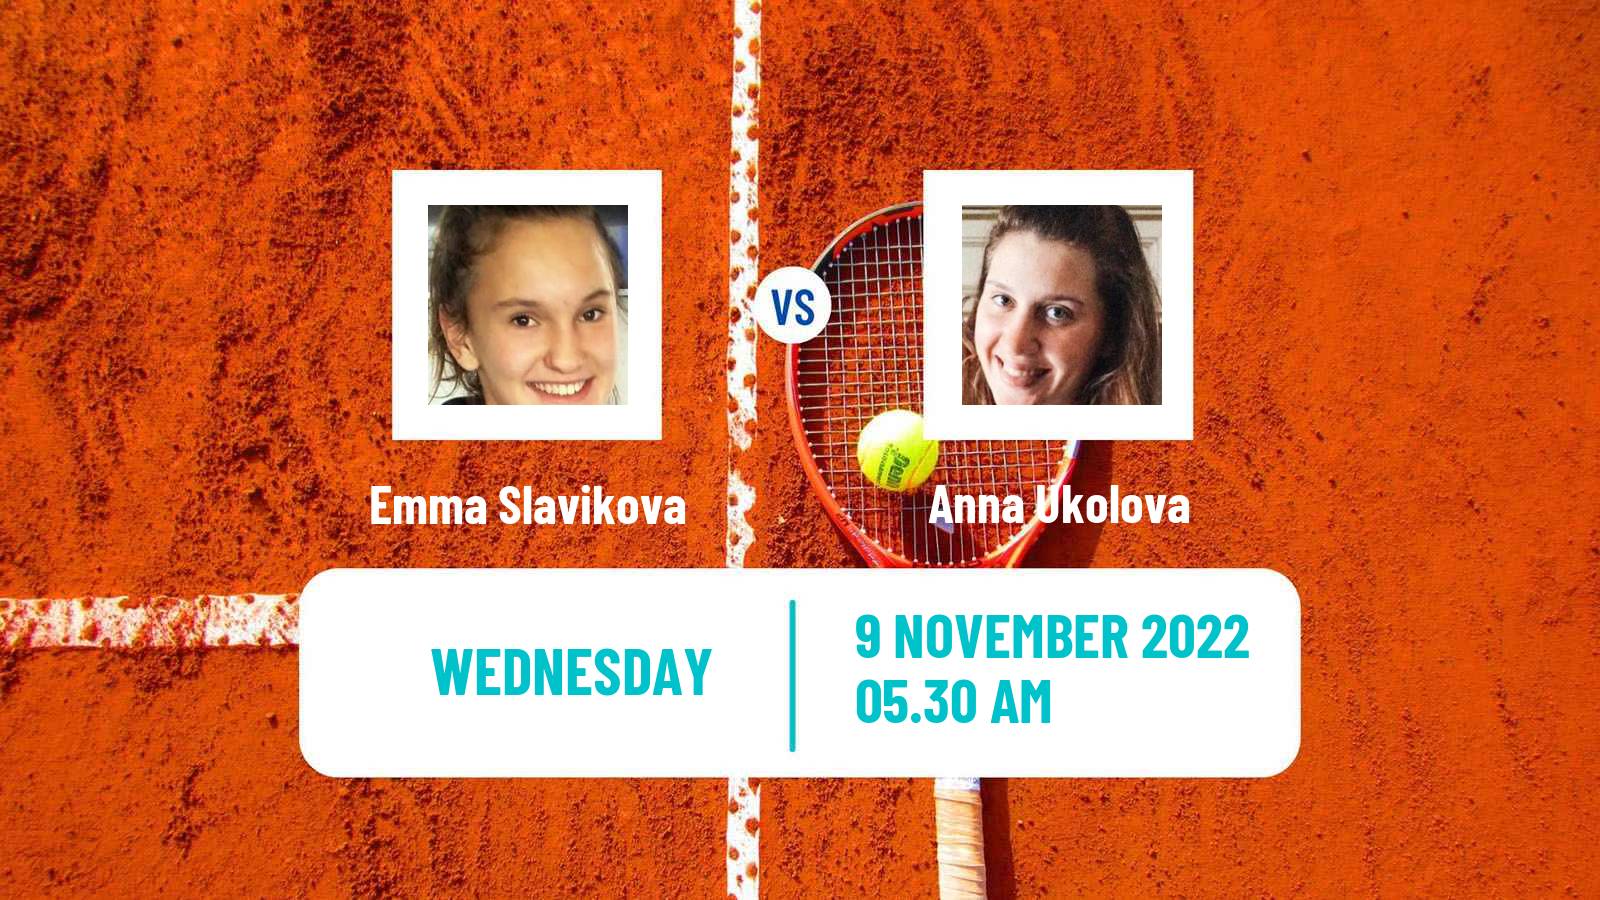 Tennis ITF Tournaments Emma Slavikova - Anna Ukolova